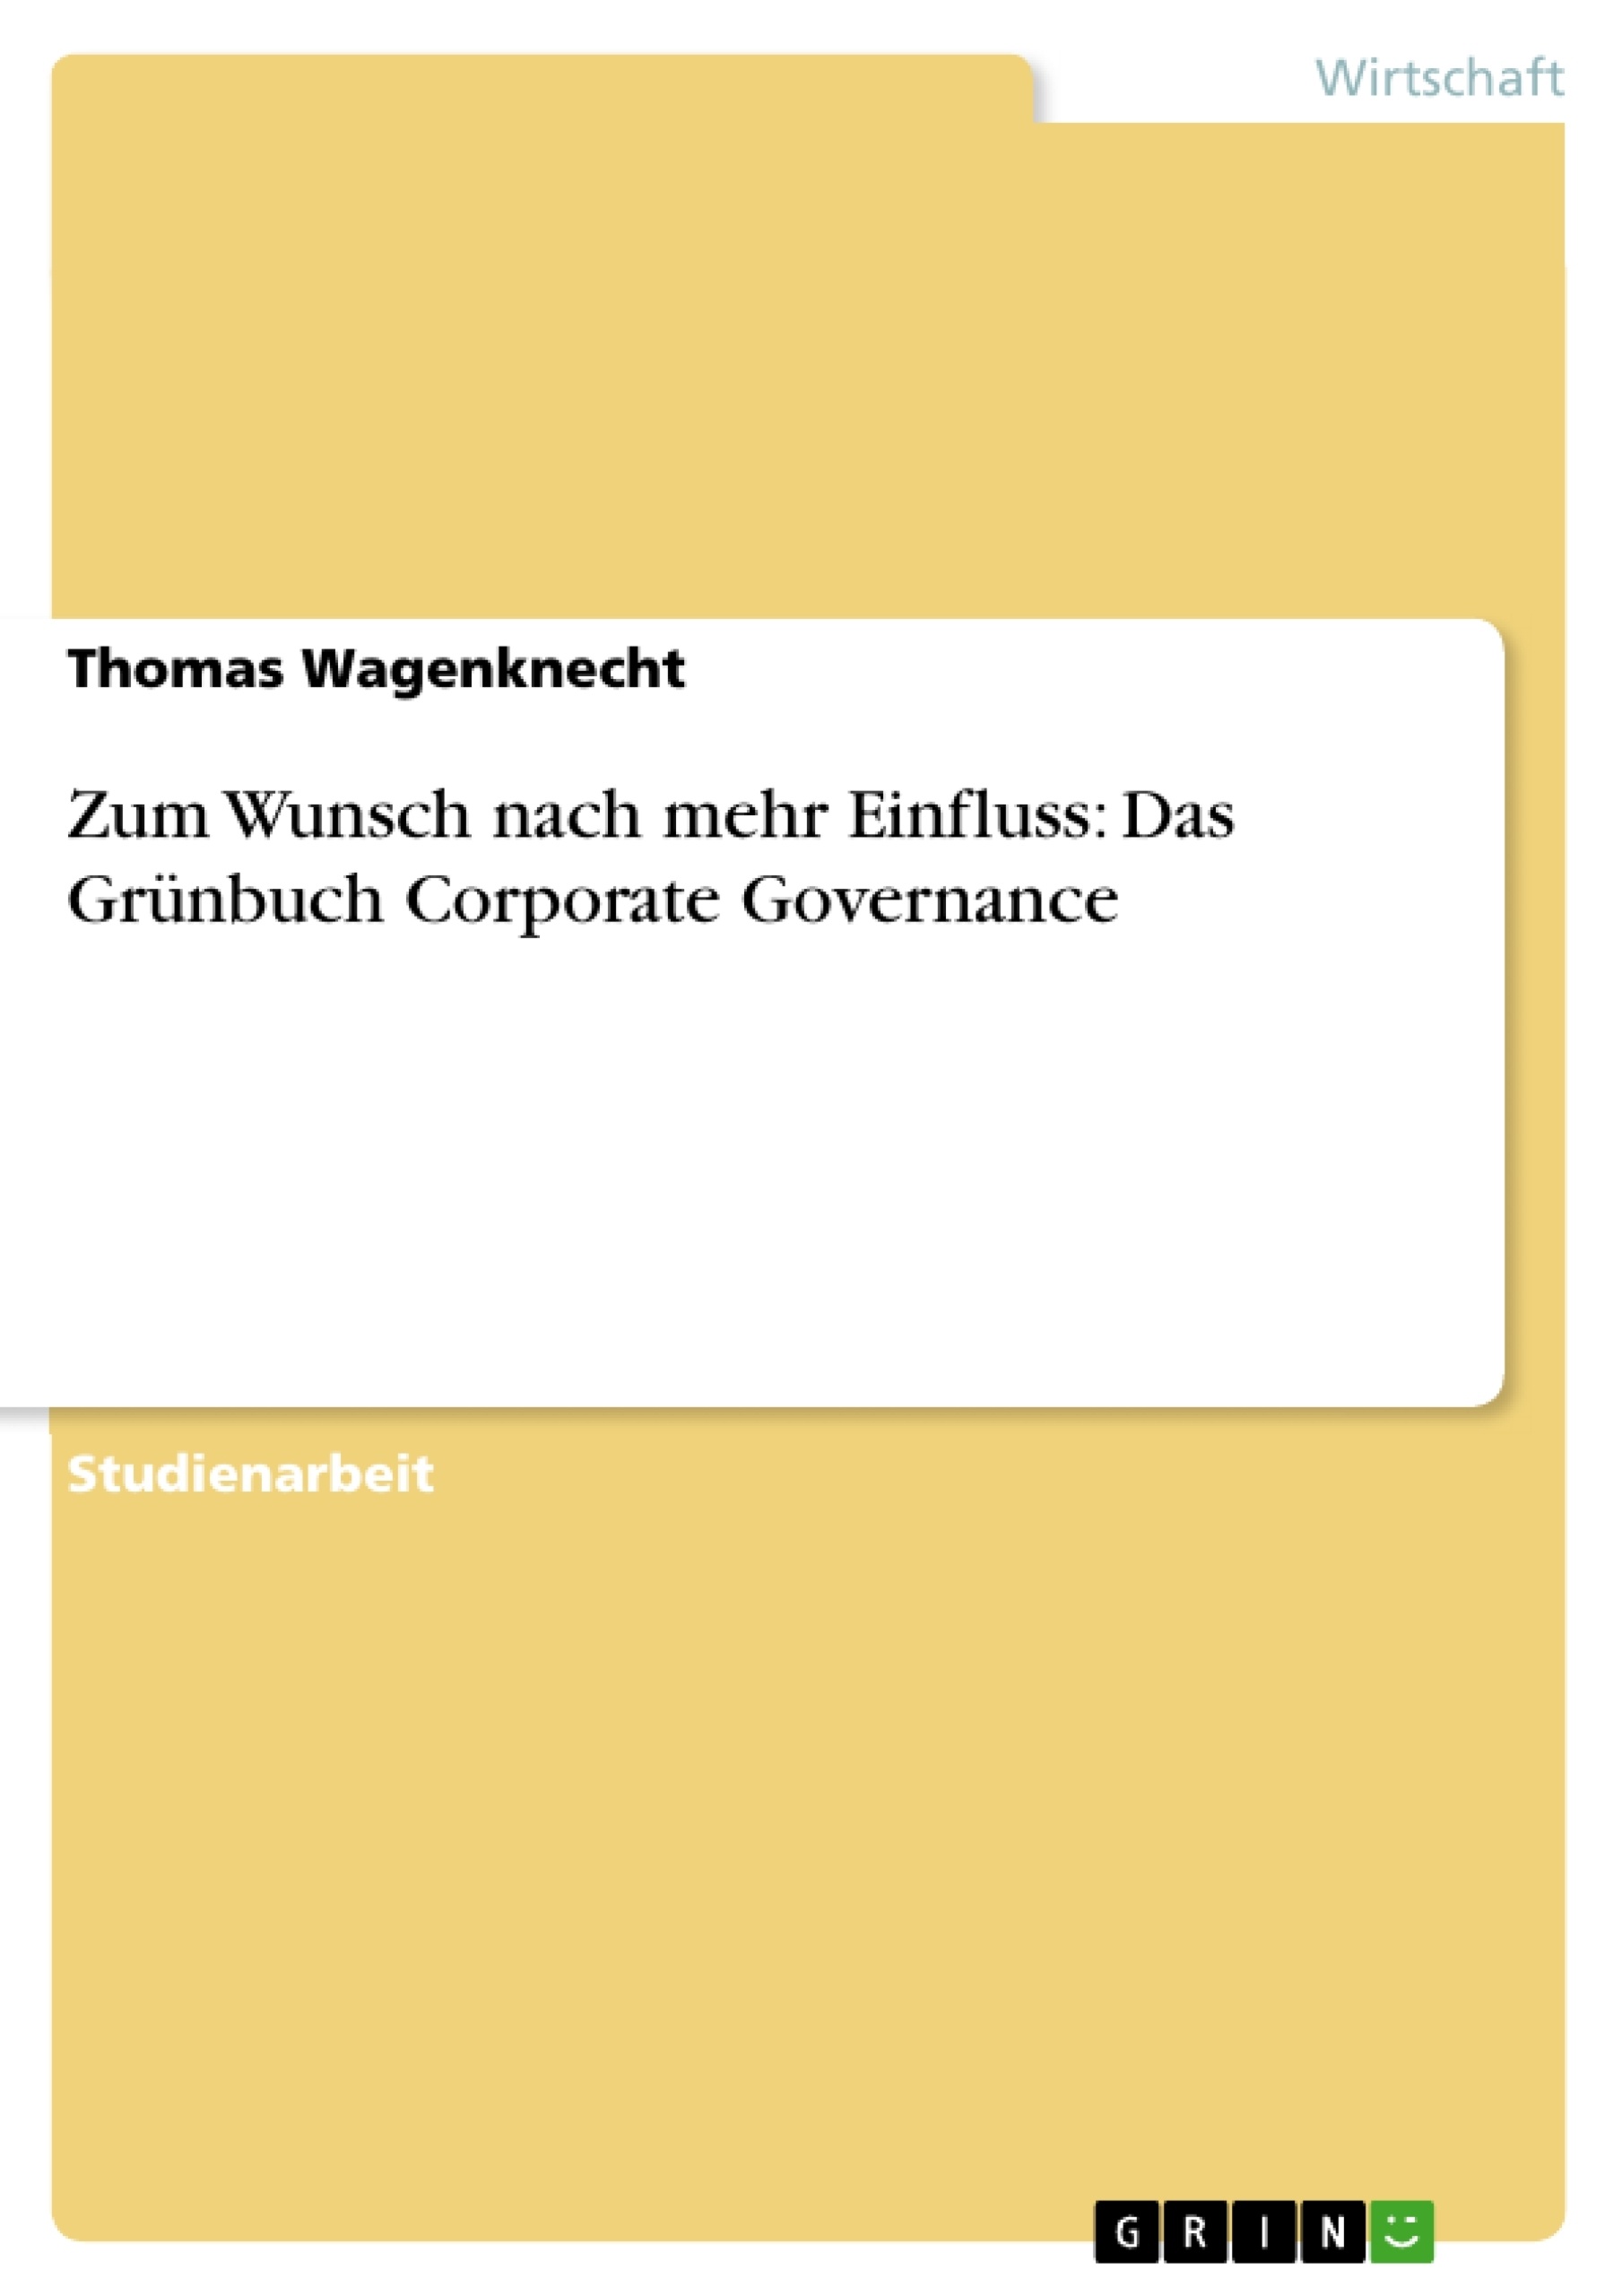 Título: Zum Wunsch nach mehr Einfluss: Das Grünbuch Corporate Governance